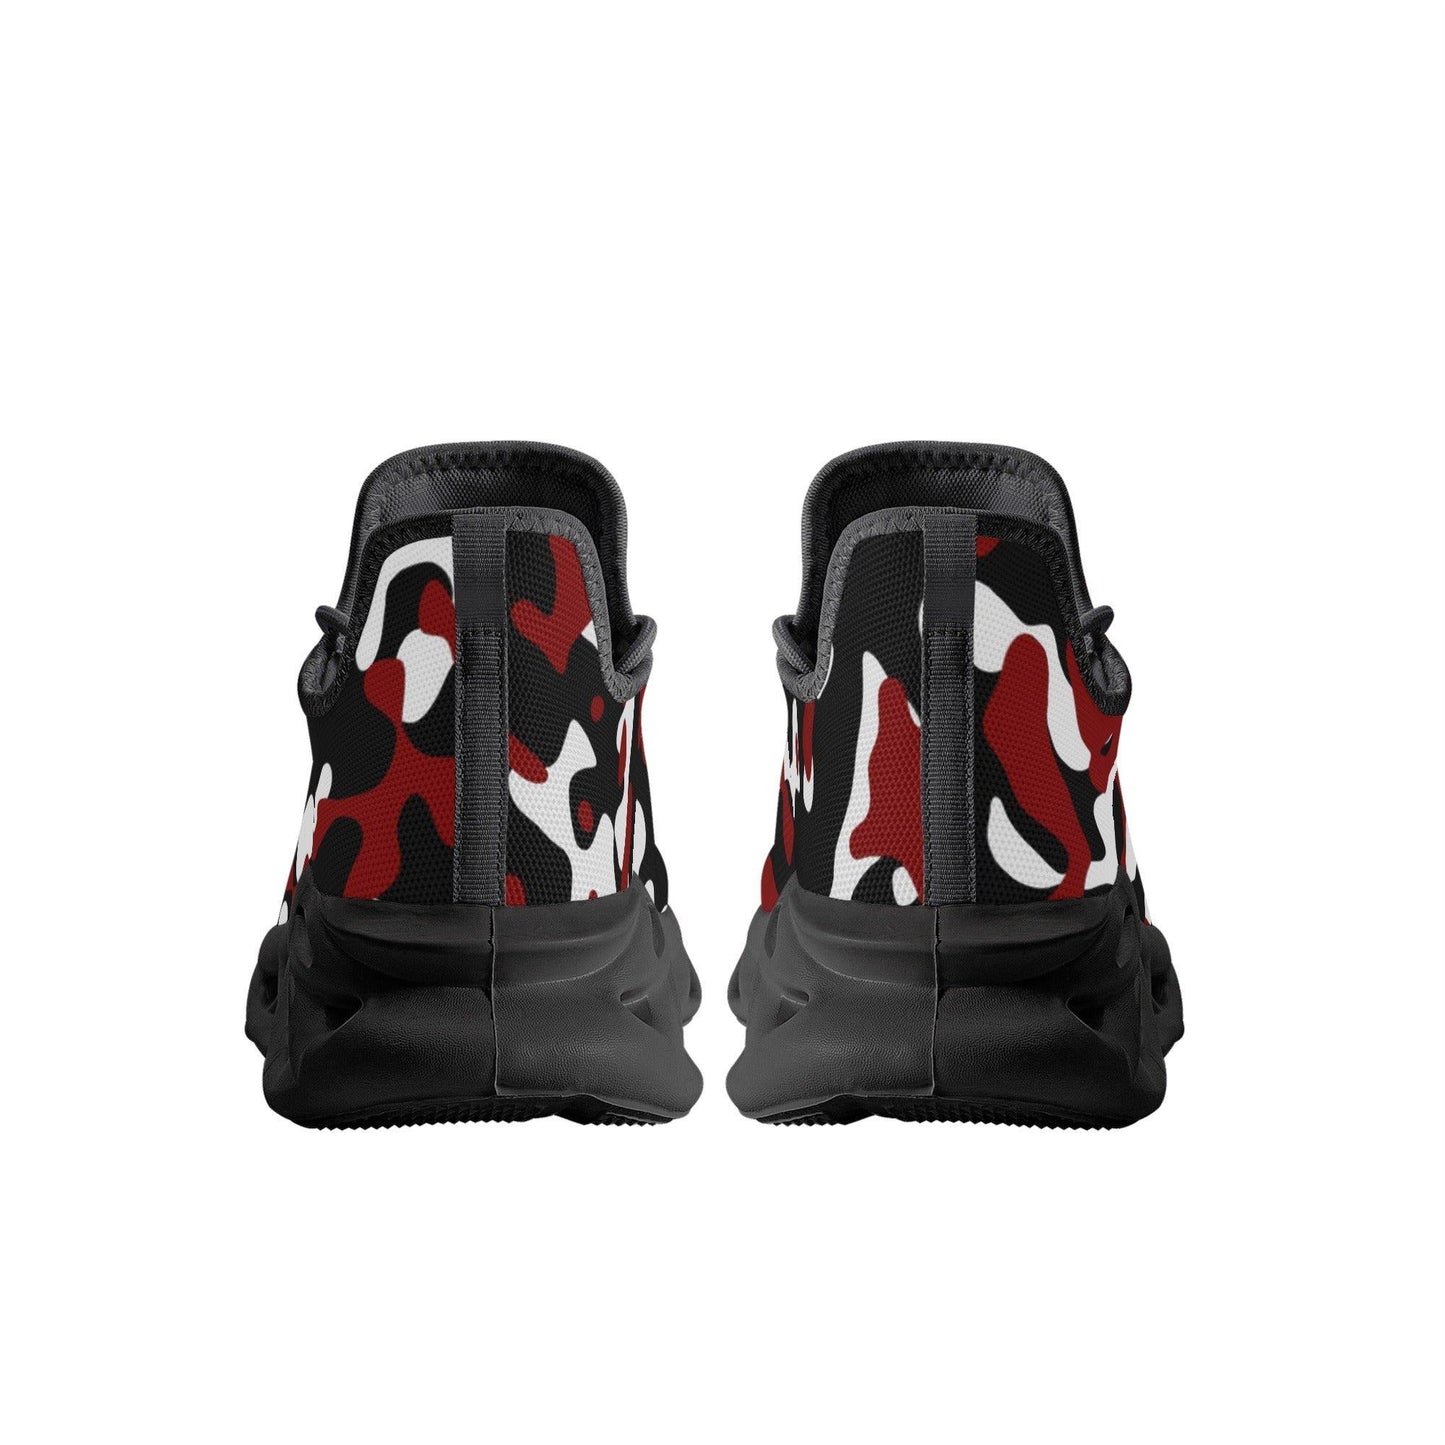 Schwarz Rot Weiß Camouflage Meeshy Flex Herren Sneaker -- Schwarz Rot Weiß Camouflage Meeshy Flex Herren Sneaker - undefined Sneaker | JLR Design